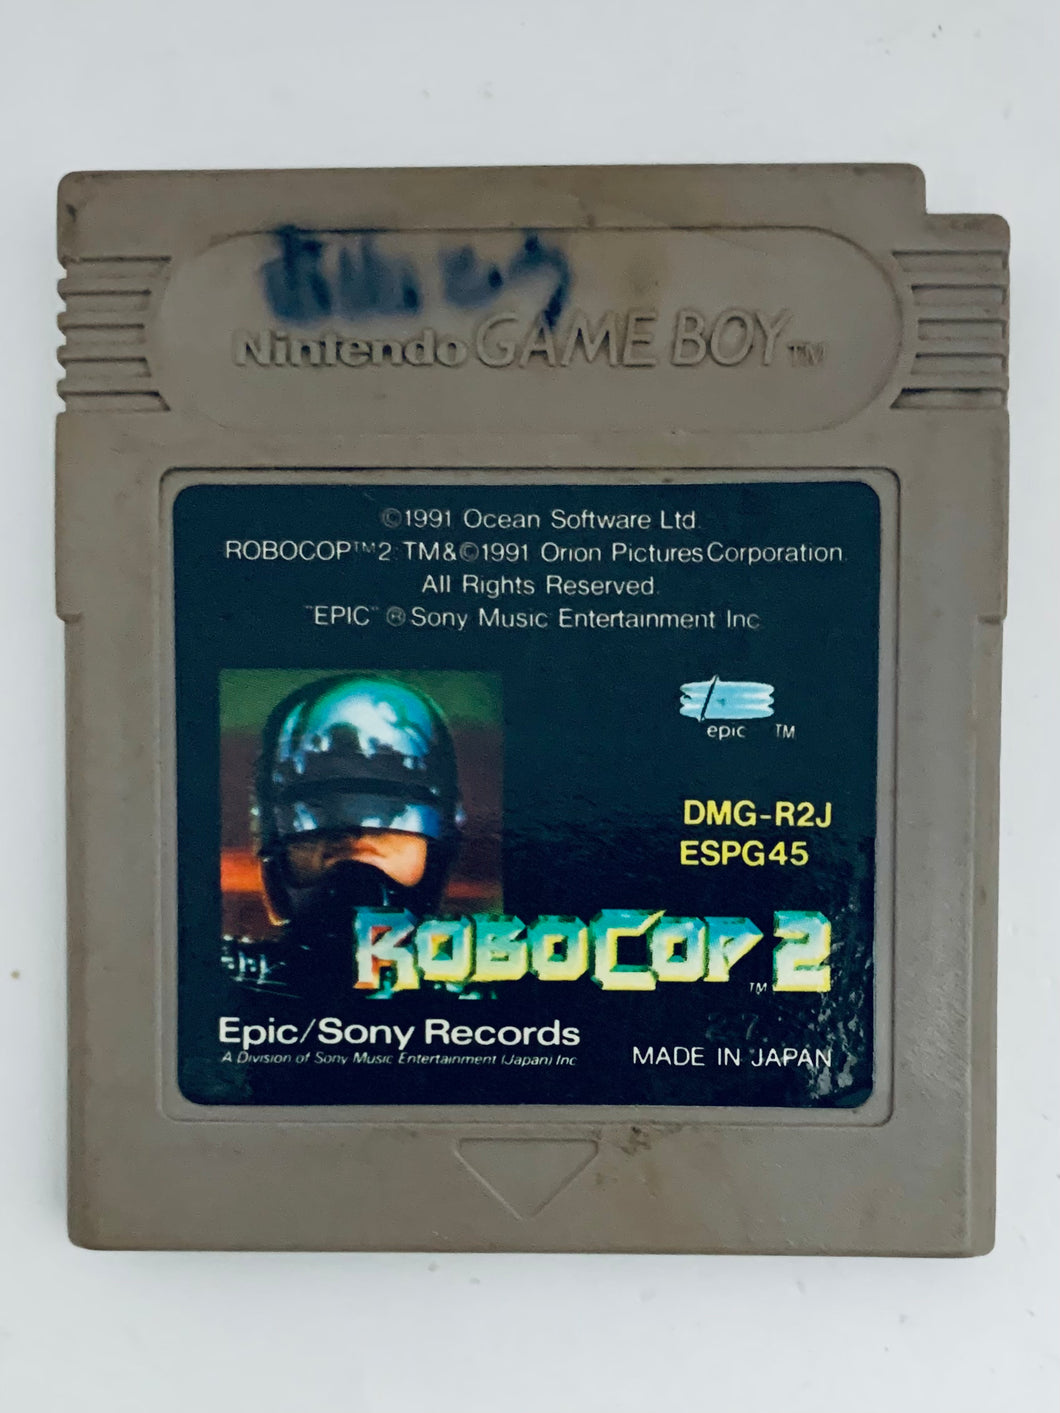 RoboCop 2 - GameBoy - Game Boy - Pocket - GBC - GBA - JP - Cartridge (DMG-R2J-JPN)